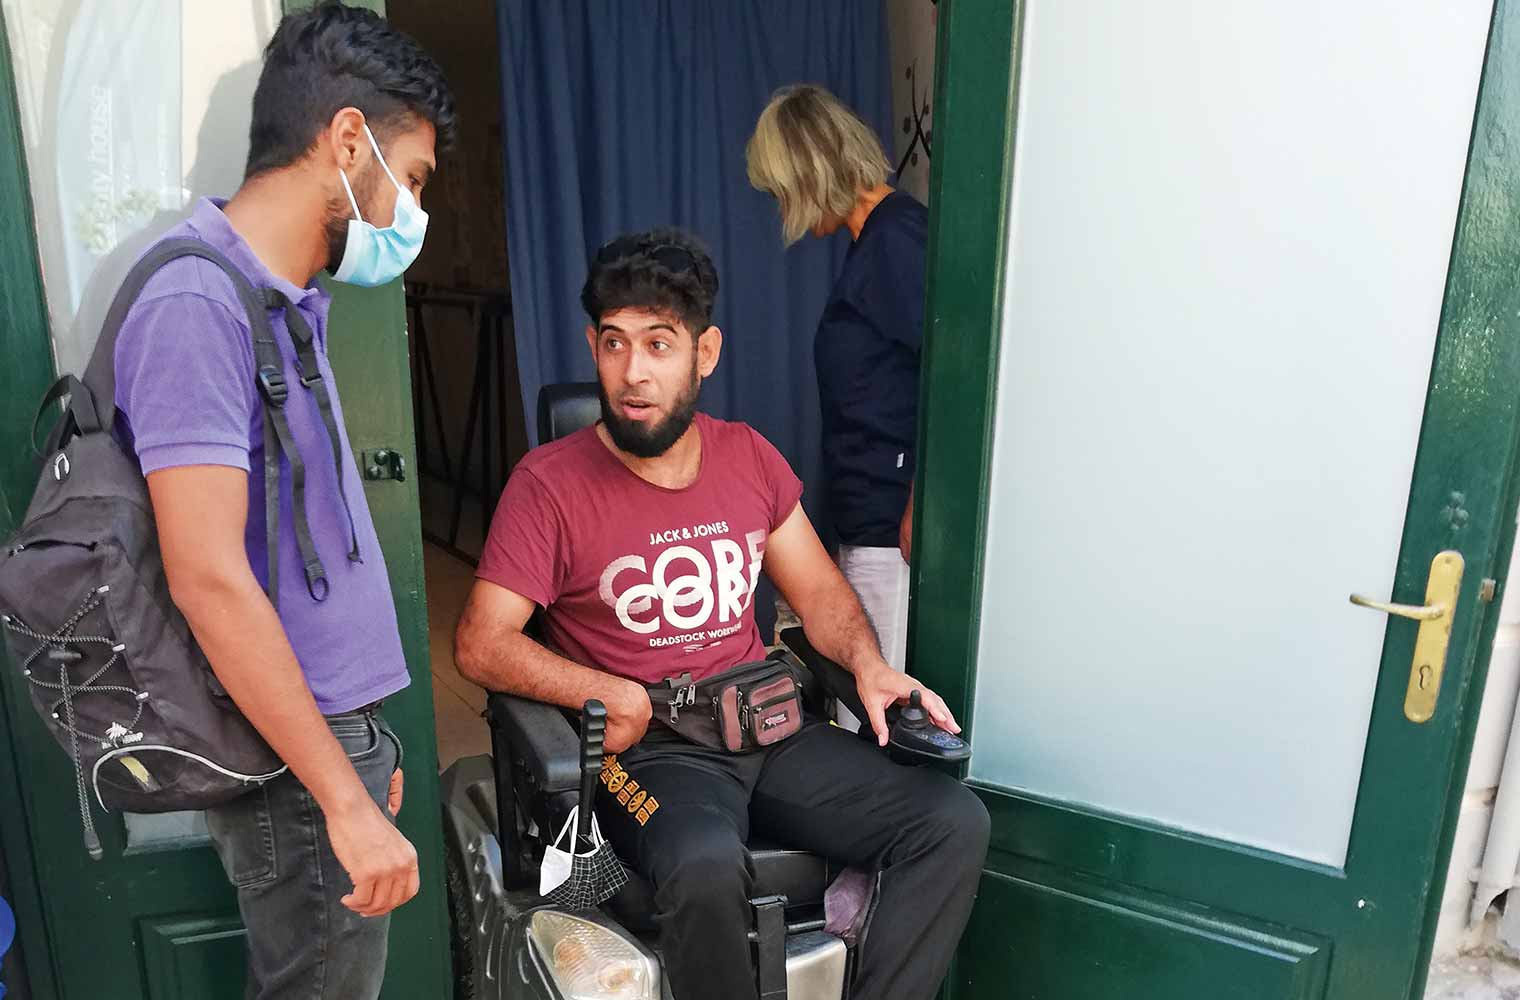 Der kriegsverletzte Khaled Alafat aus Syrien verlässt in seinem Elektro- Rollstuhl gerade die Therapiestelle.